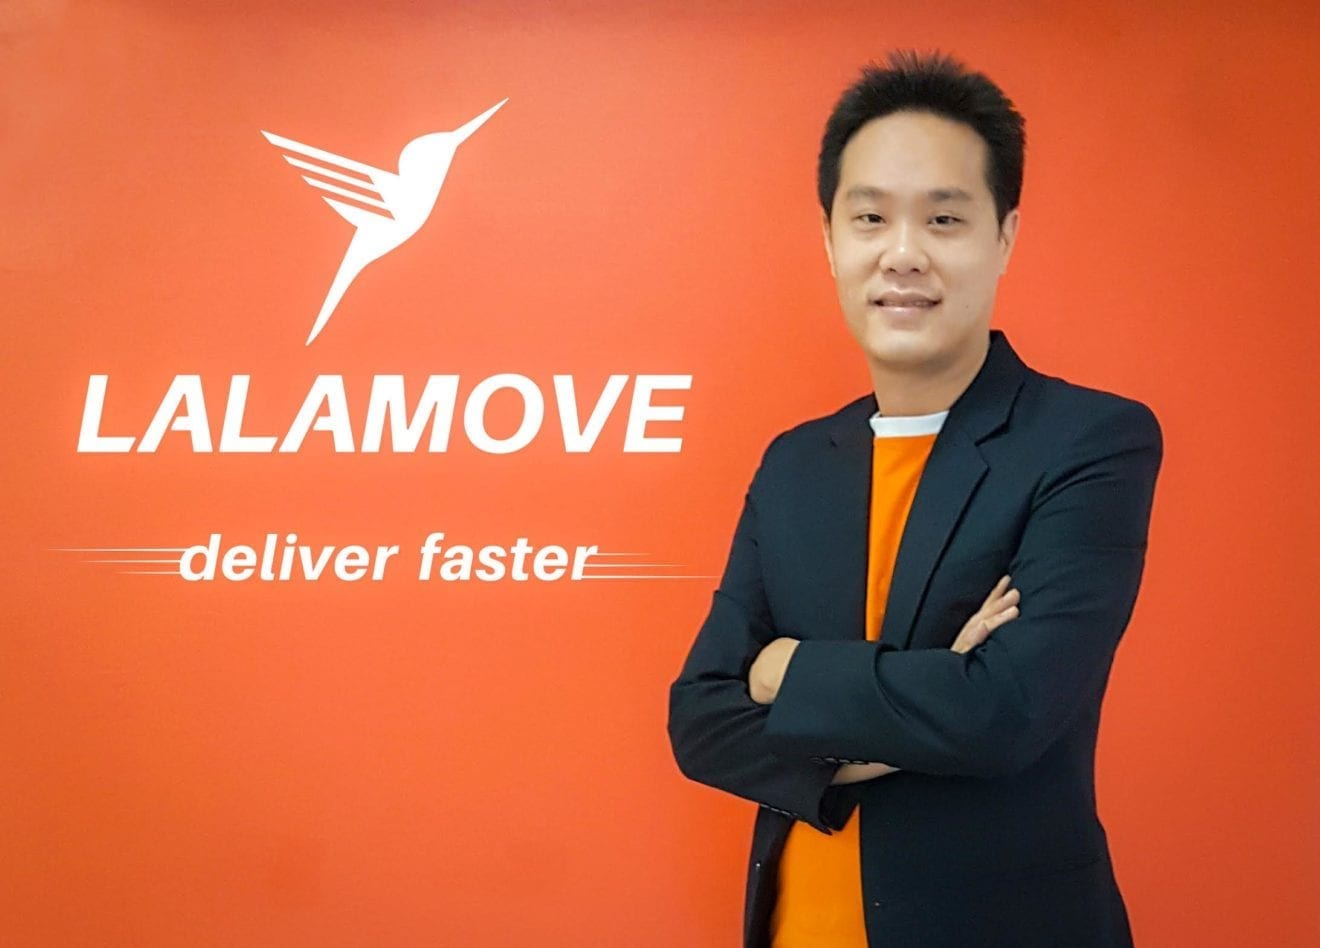 Lalamove-Deliver-Faster-Santit.jpg